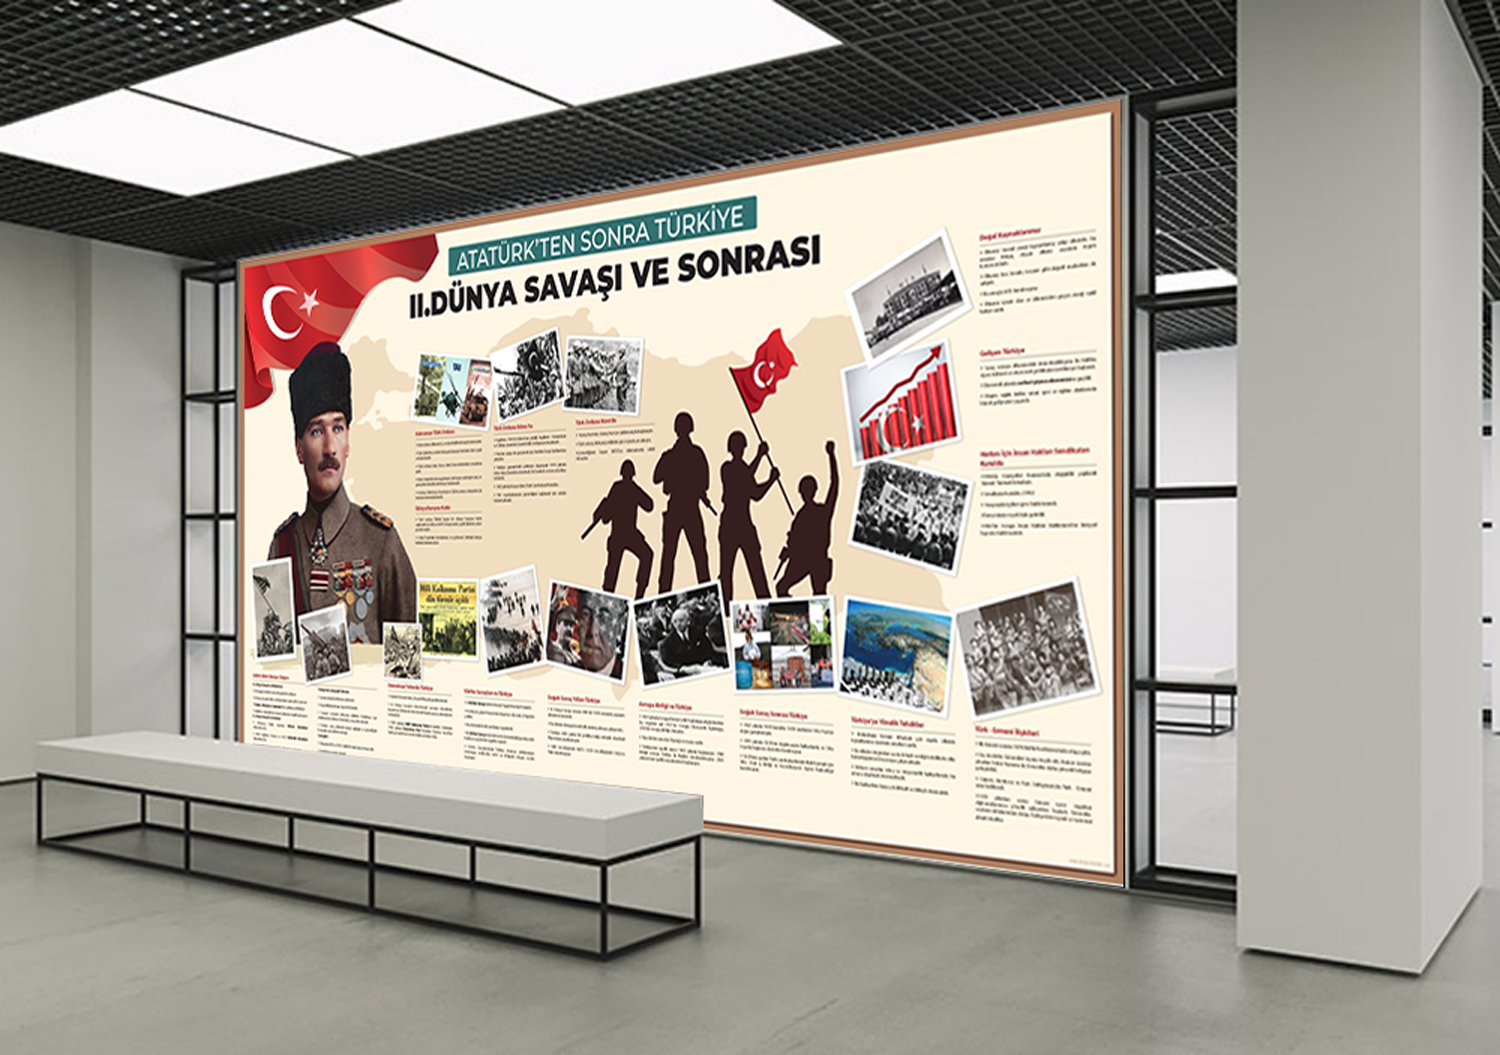 Atatürk’ten Sonra 2. Dünya Savaşı ve Sonrası Okul Posteri